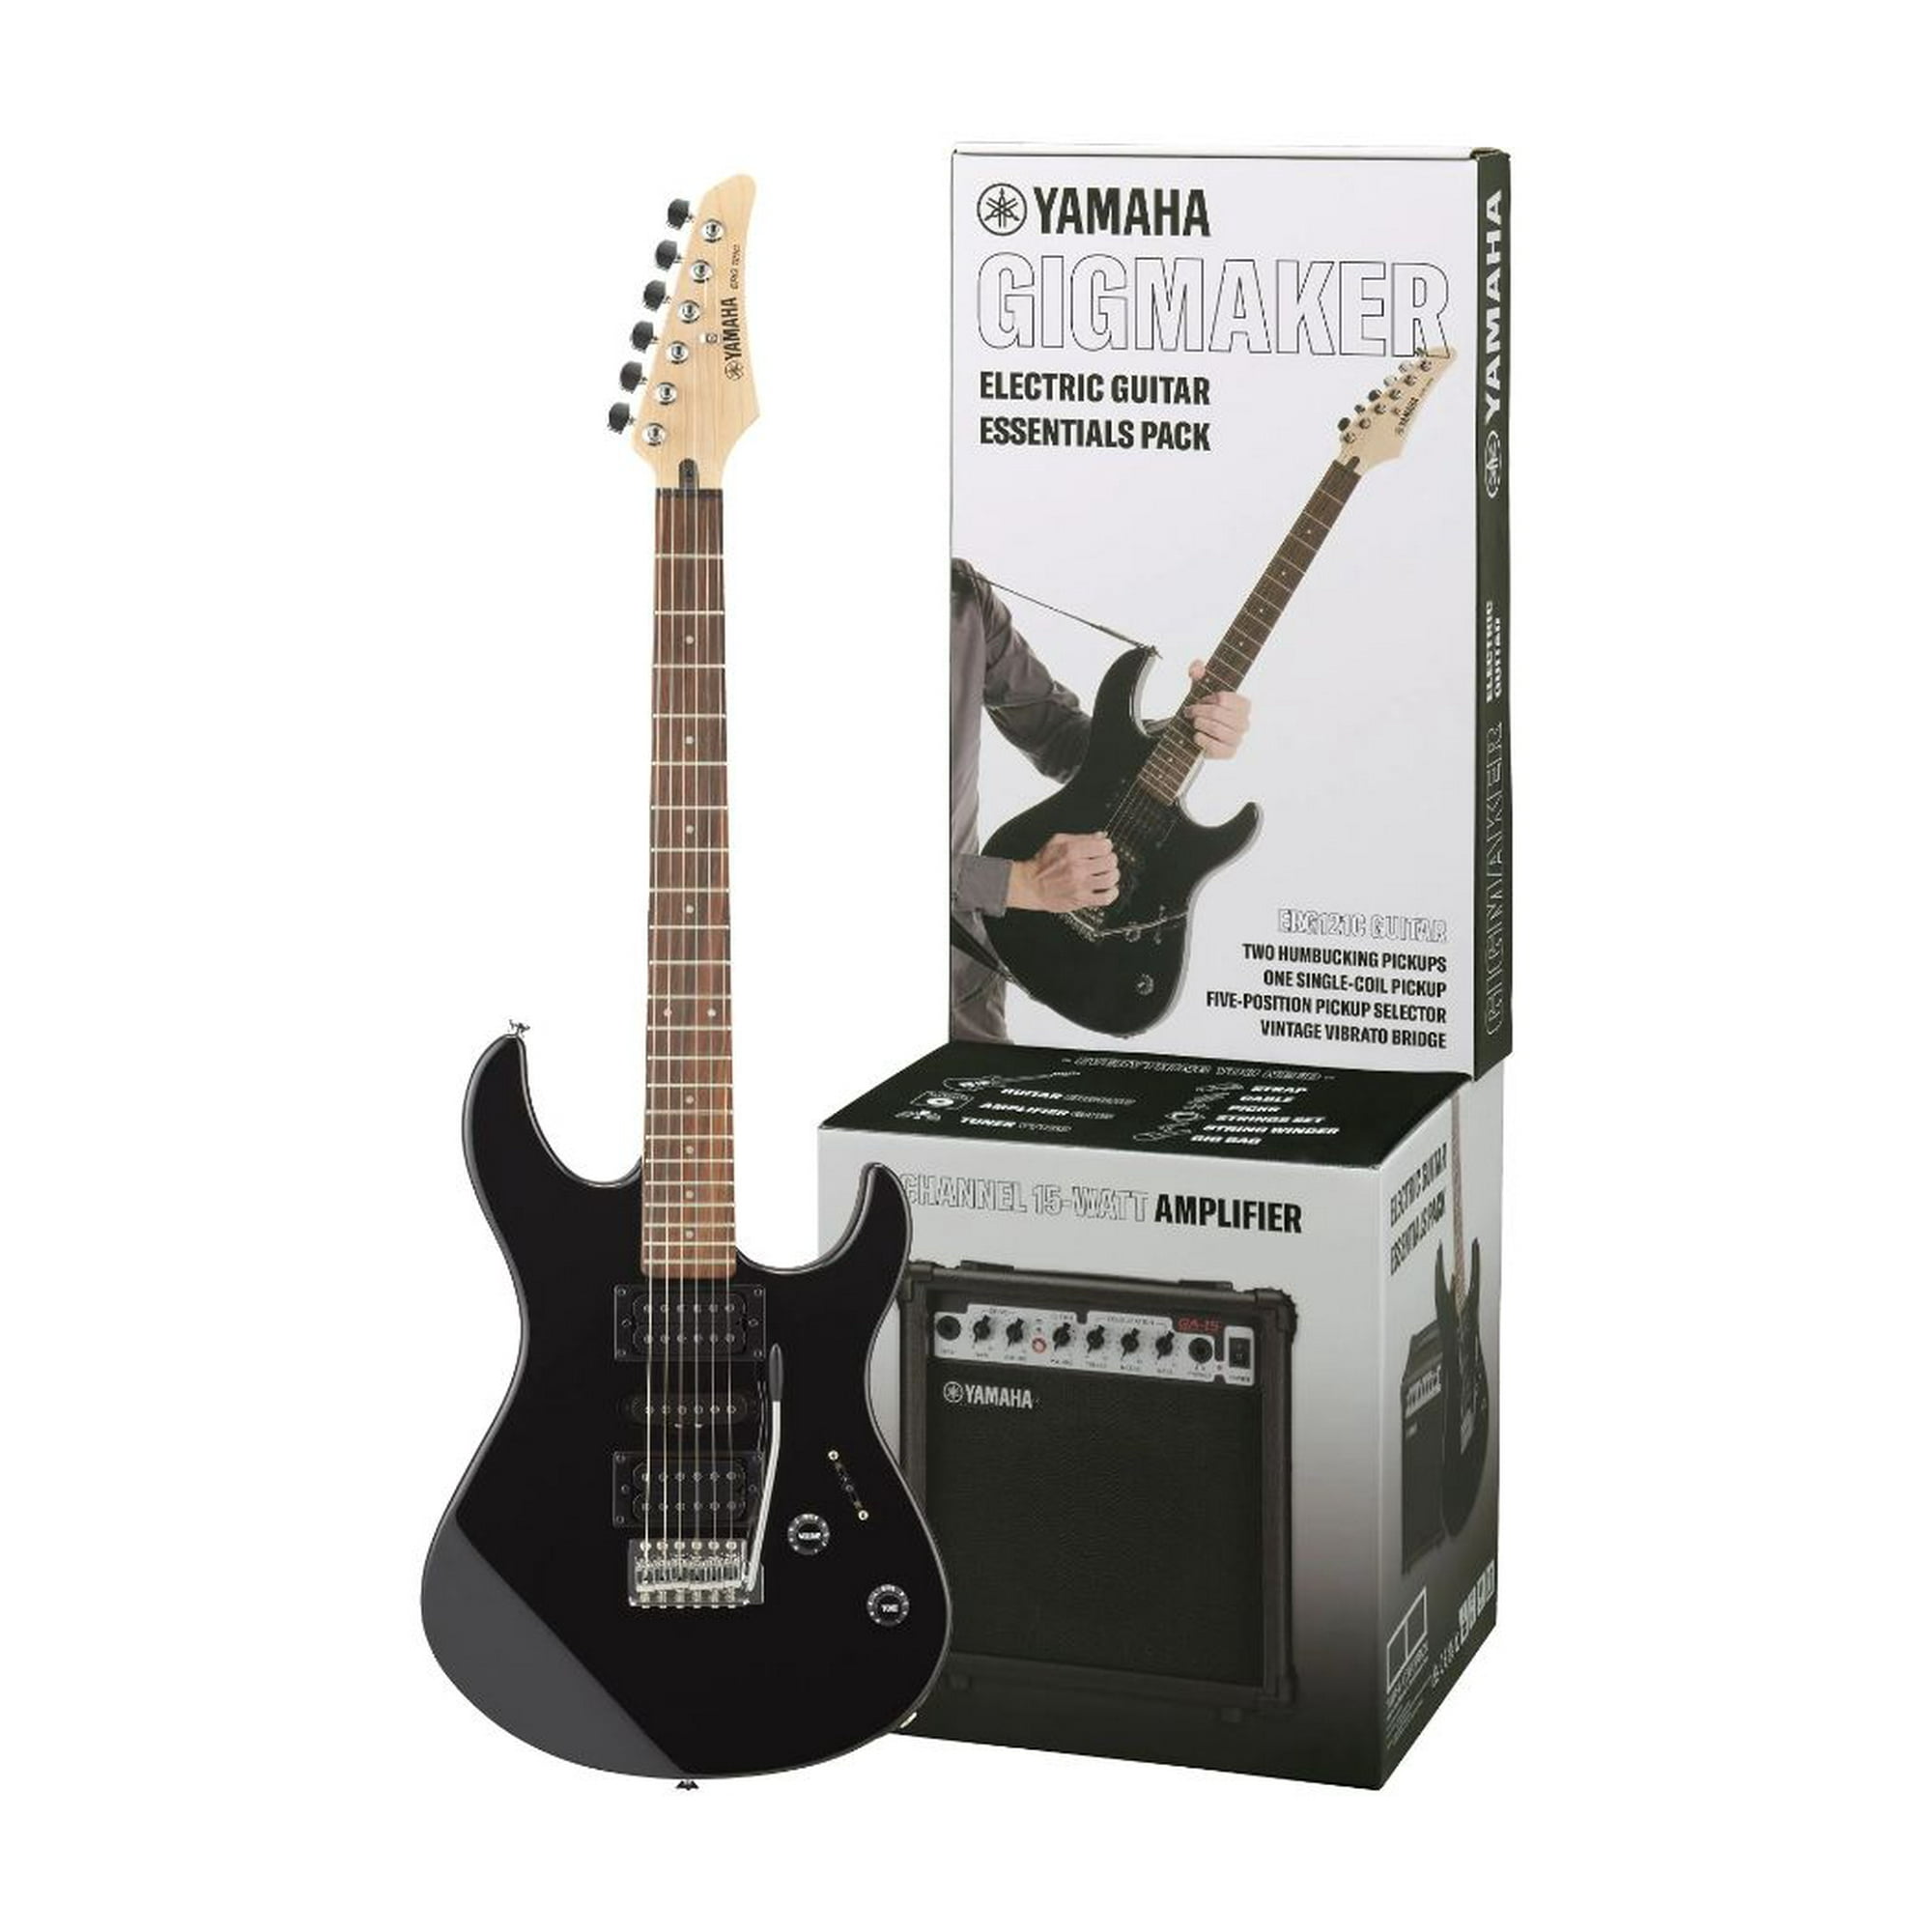 Amplificador Yamaha Para Guitarra Eléctrica De 15W GA15II YAMAHA